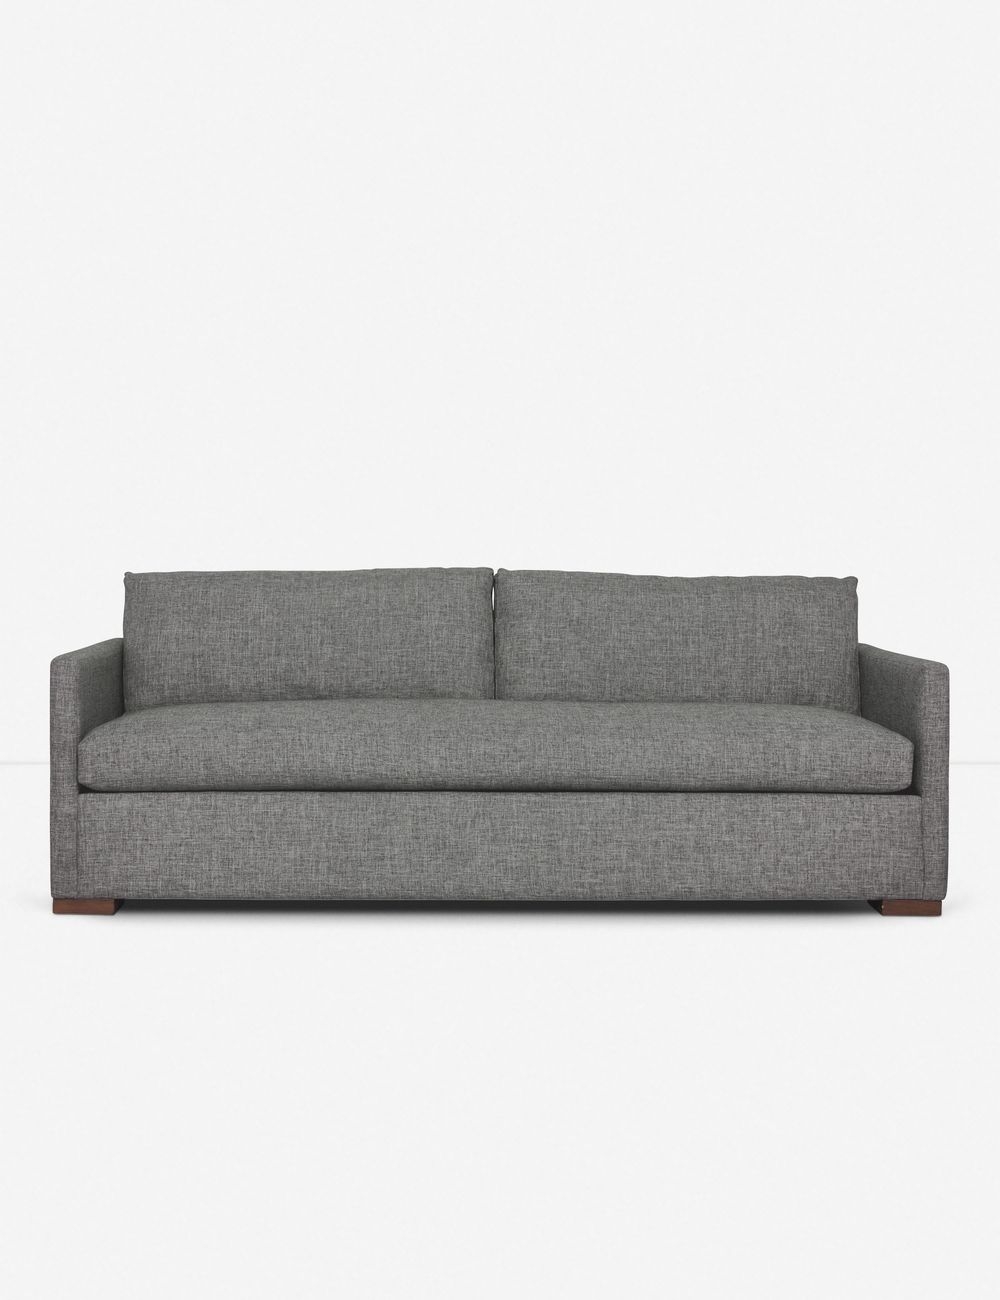 Callahan Sofa, Charcoal 7'4" - Image 0